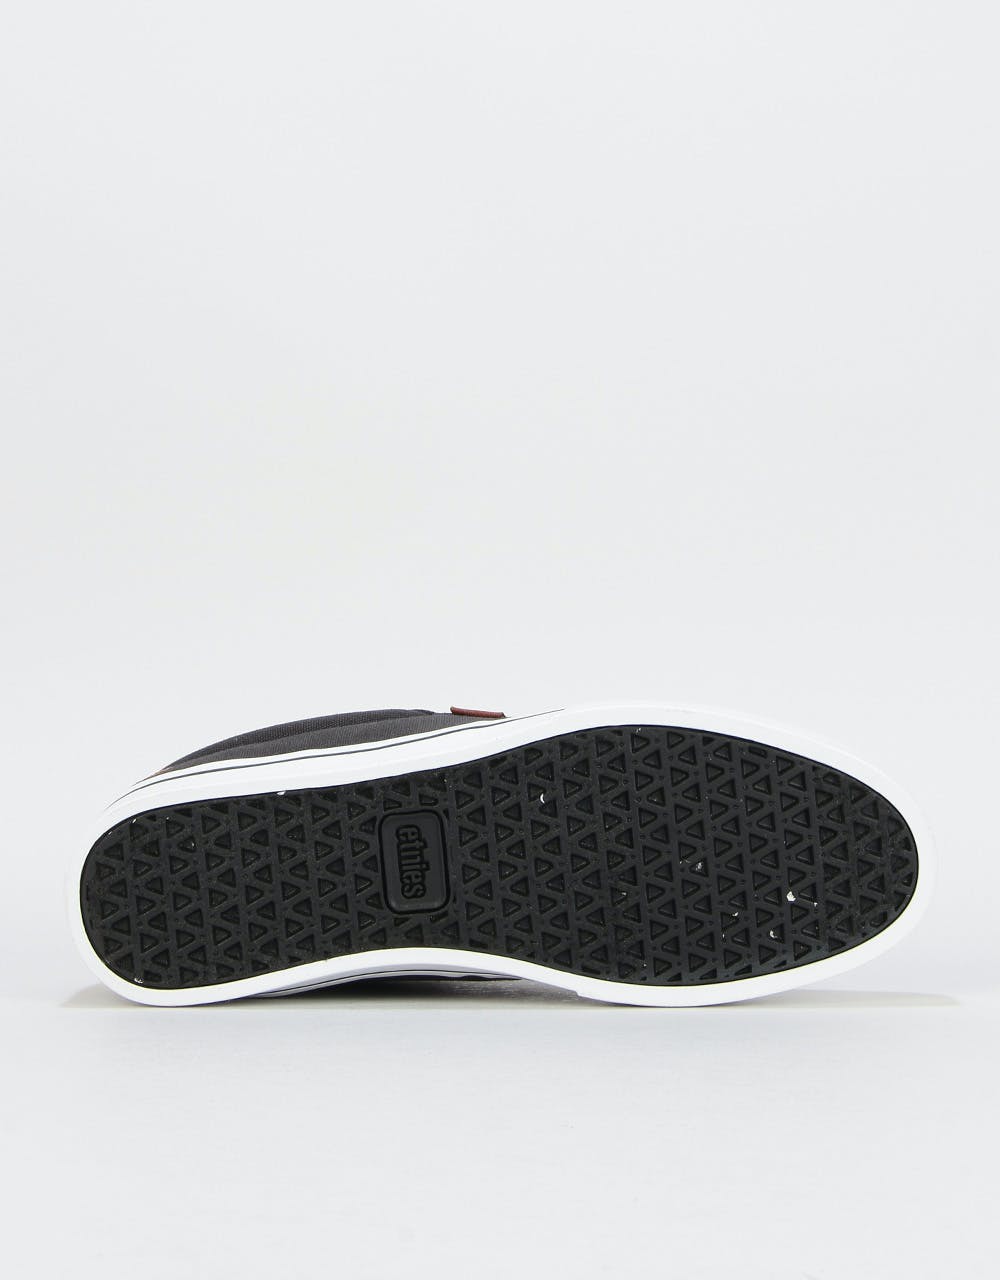 Etnies Jameson 2 Eco Skate Shoes - Navy/Tan/White